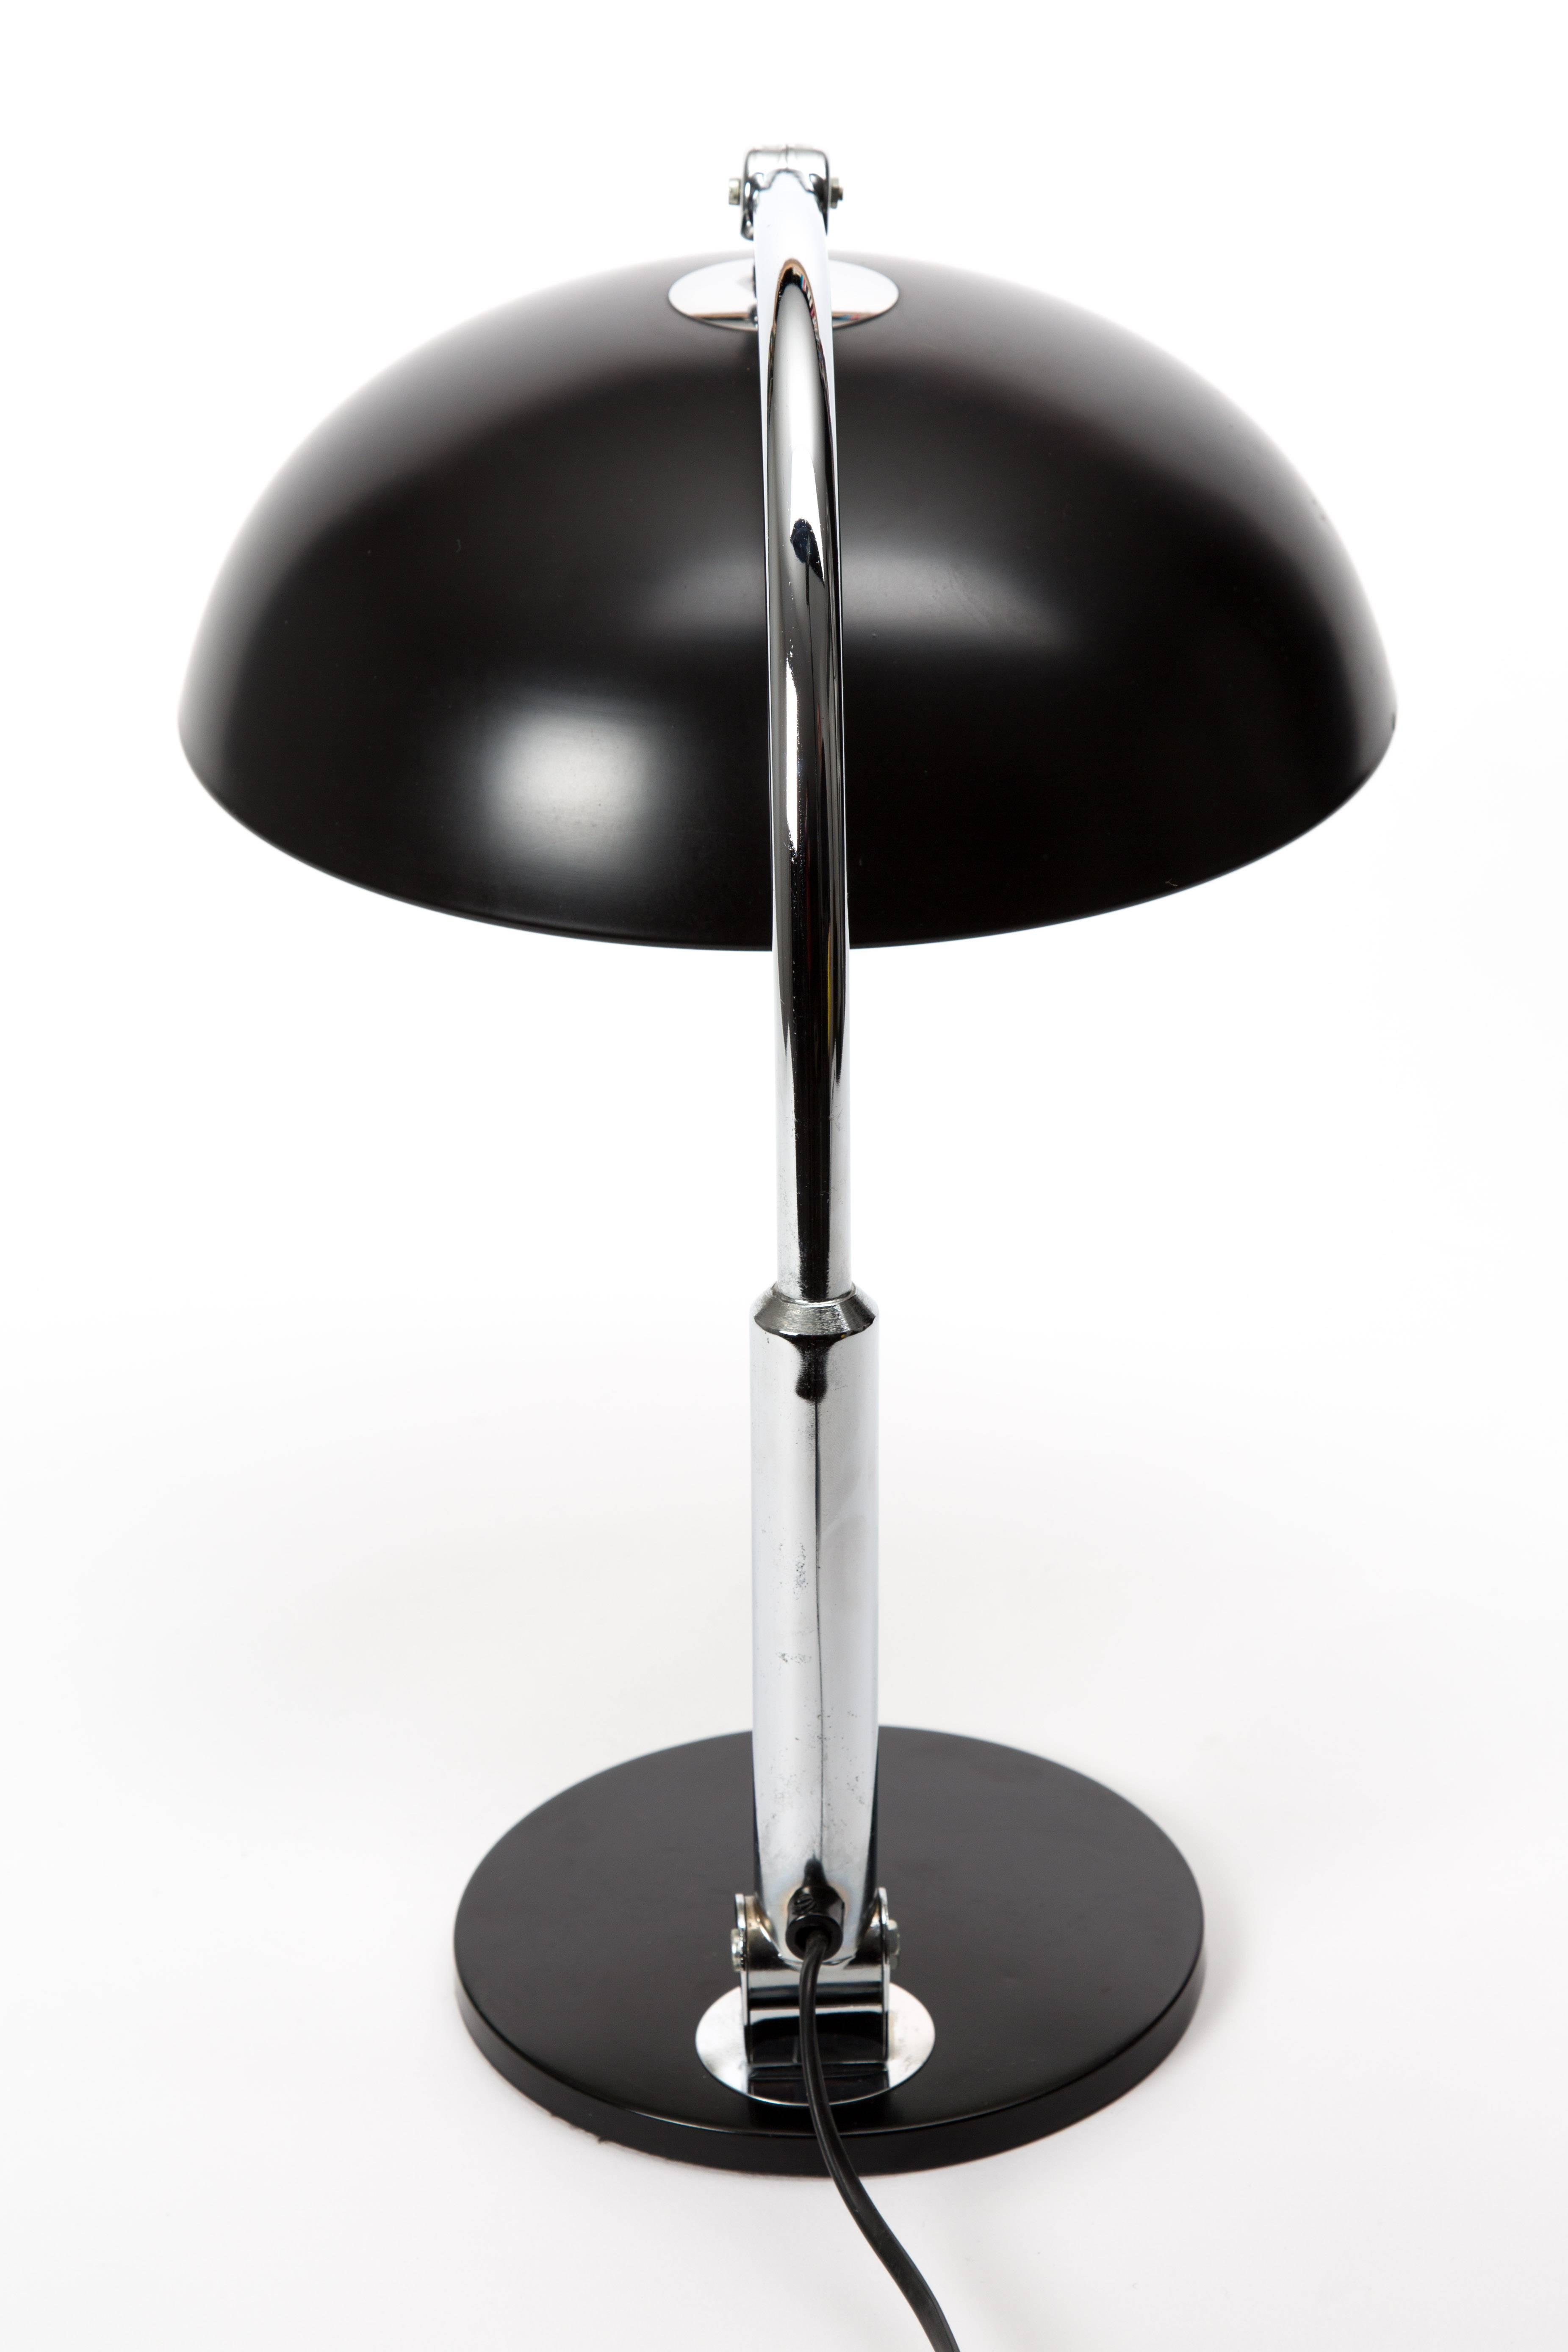 Chrome Hala Zeist Table Lamp by J Busquet Black Desk Lamp